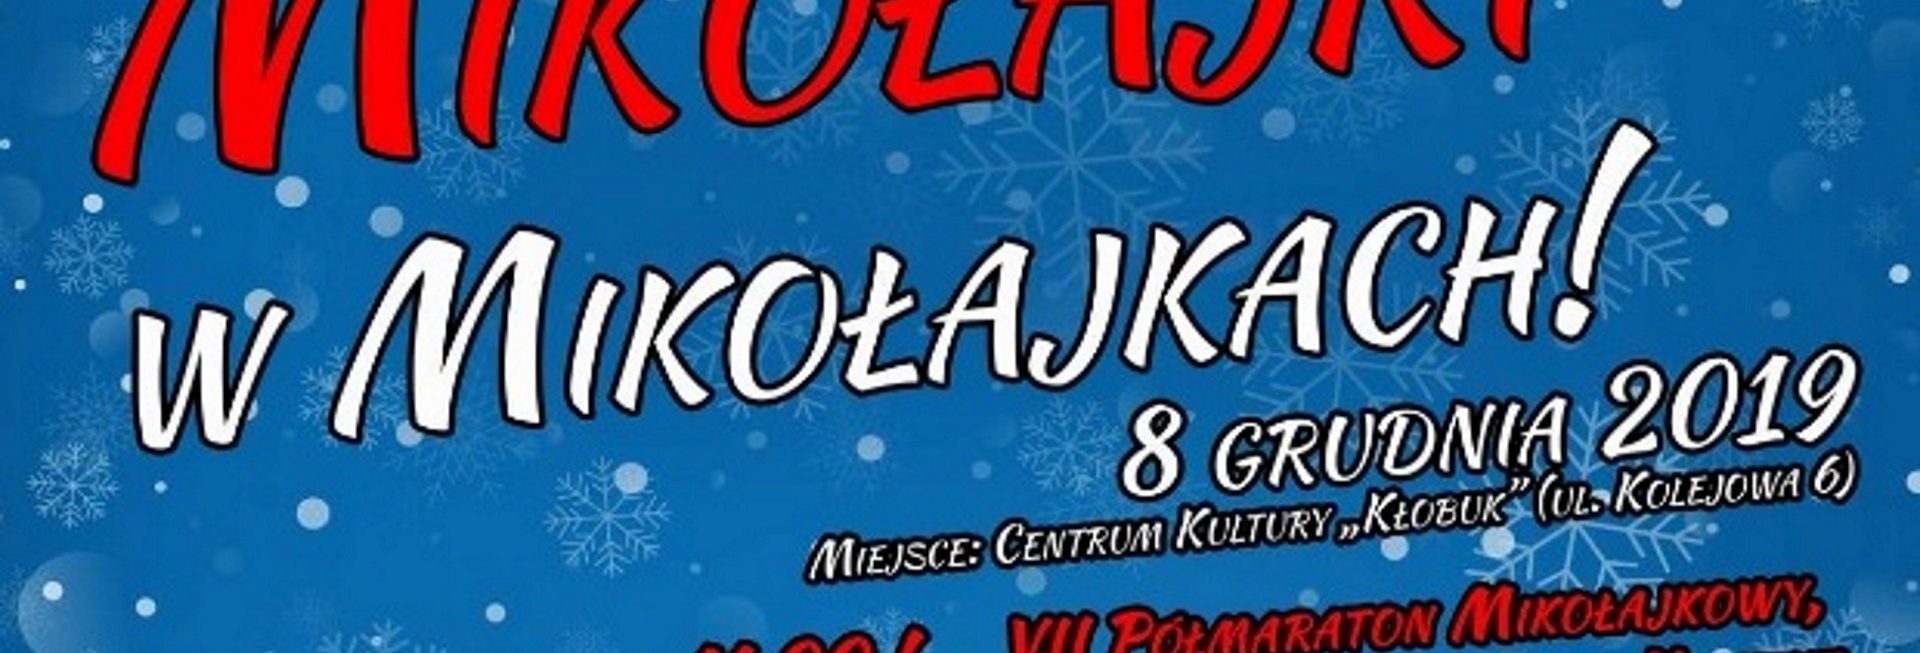 Plakat graficzny zapraszający na Mikołajki 2019 do Mikołajek. Plakat z napisami i programem imprezy.  